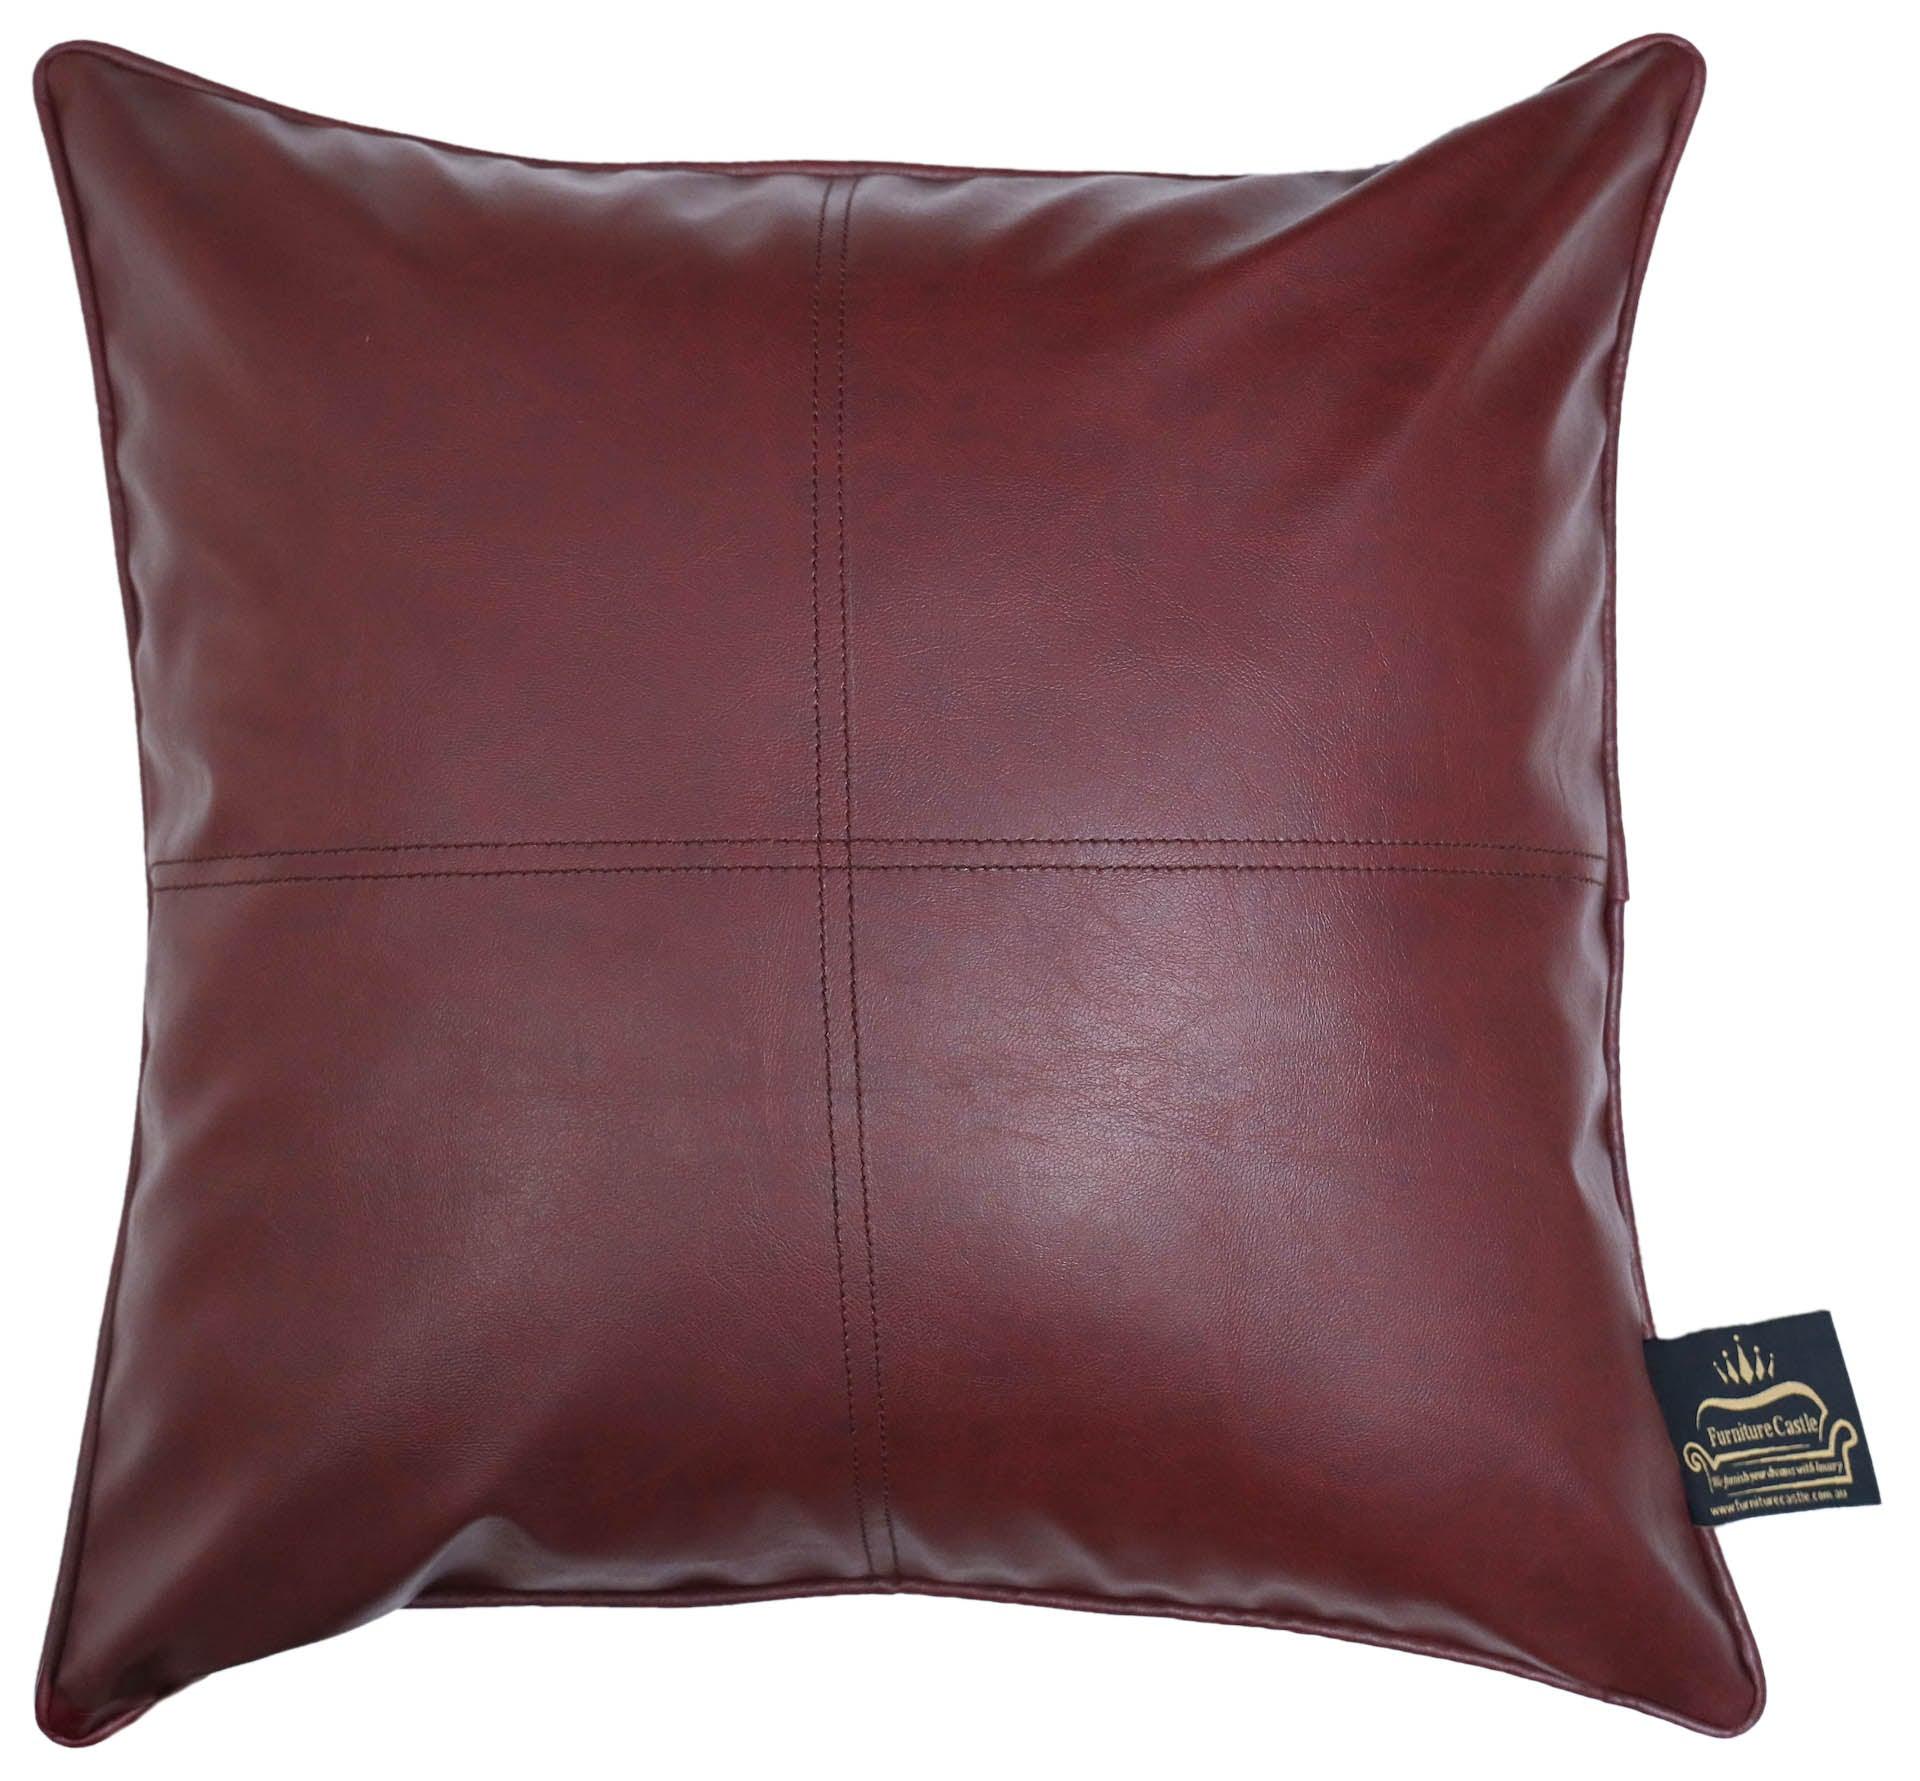 Sleep Tight Indoor Cushion 18x18'' - Furniture Castle